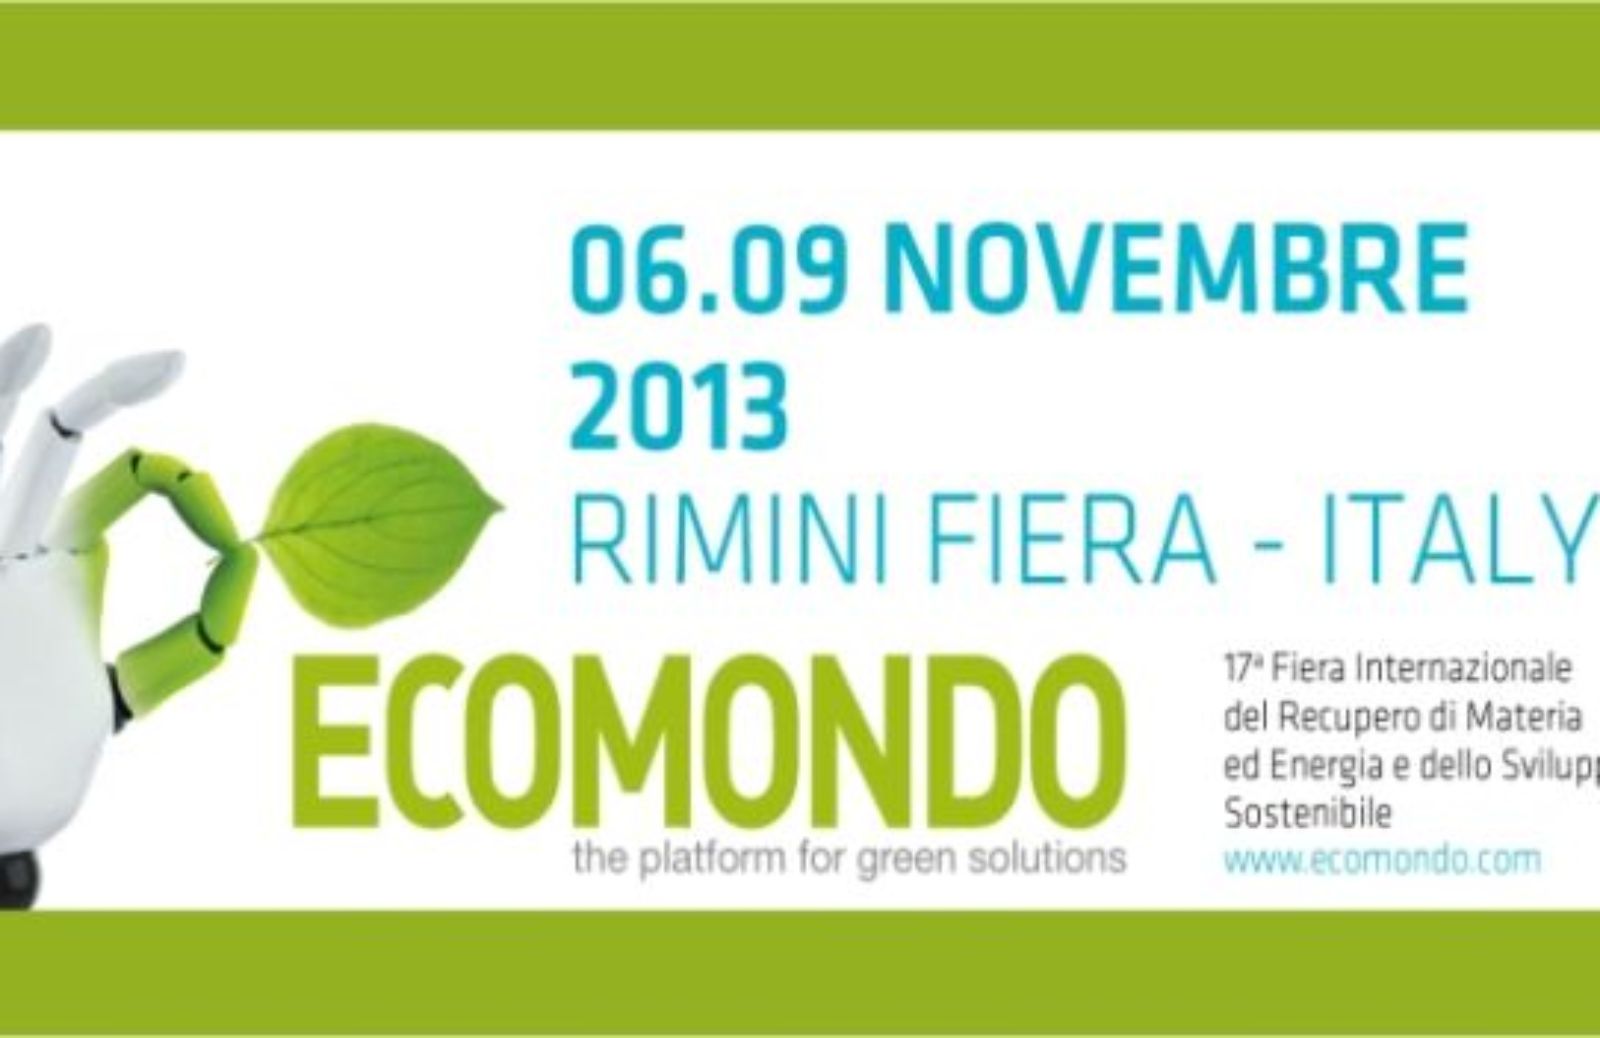 Ecomondo 2013: la green economy protagonista a Rimini Fiera 